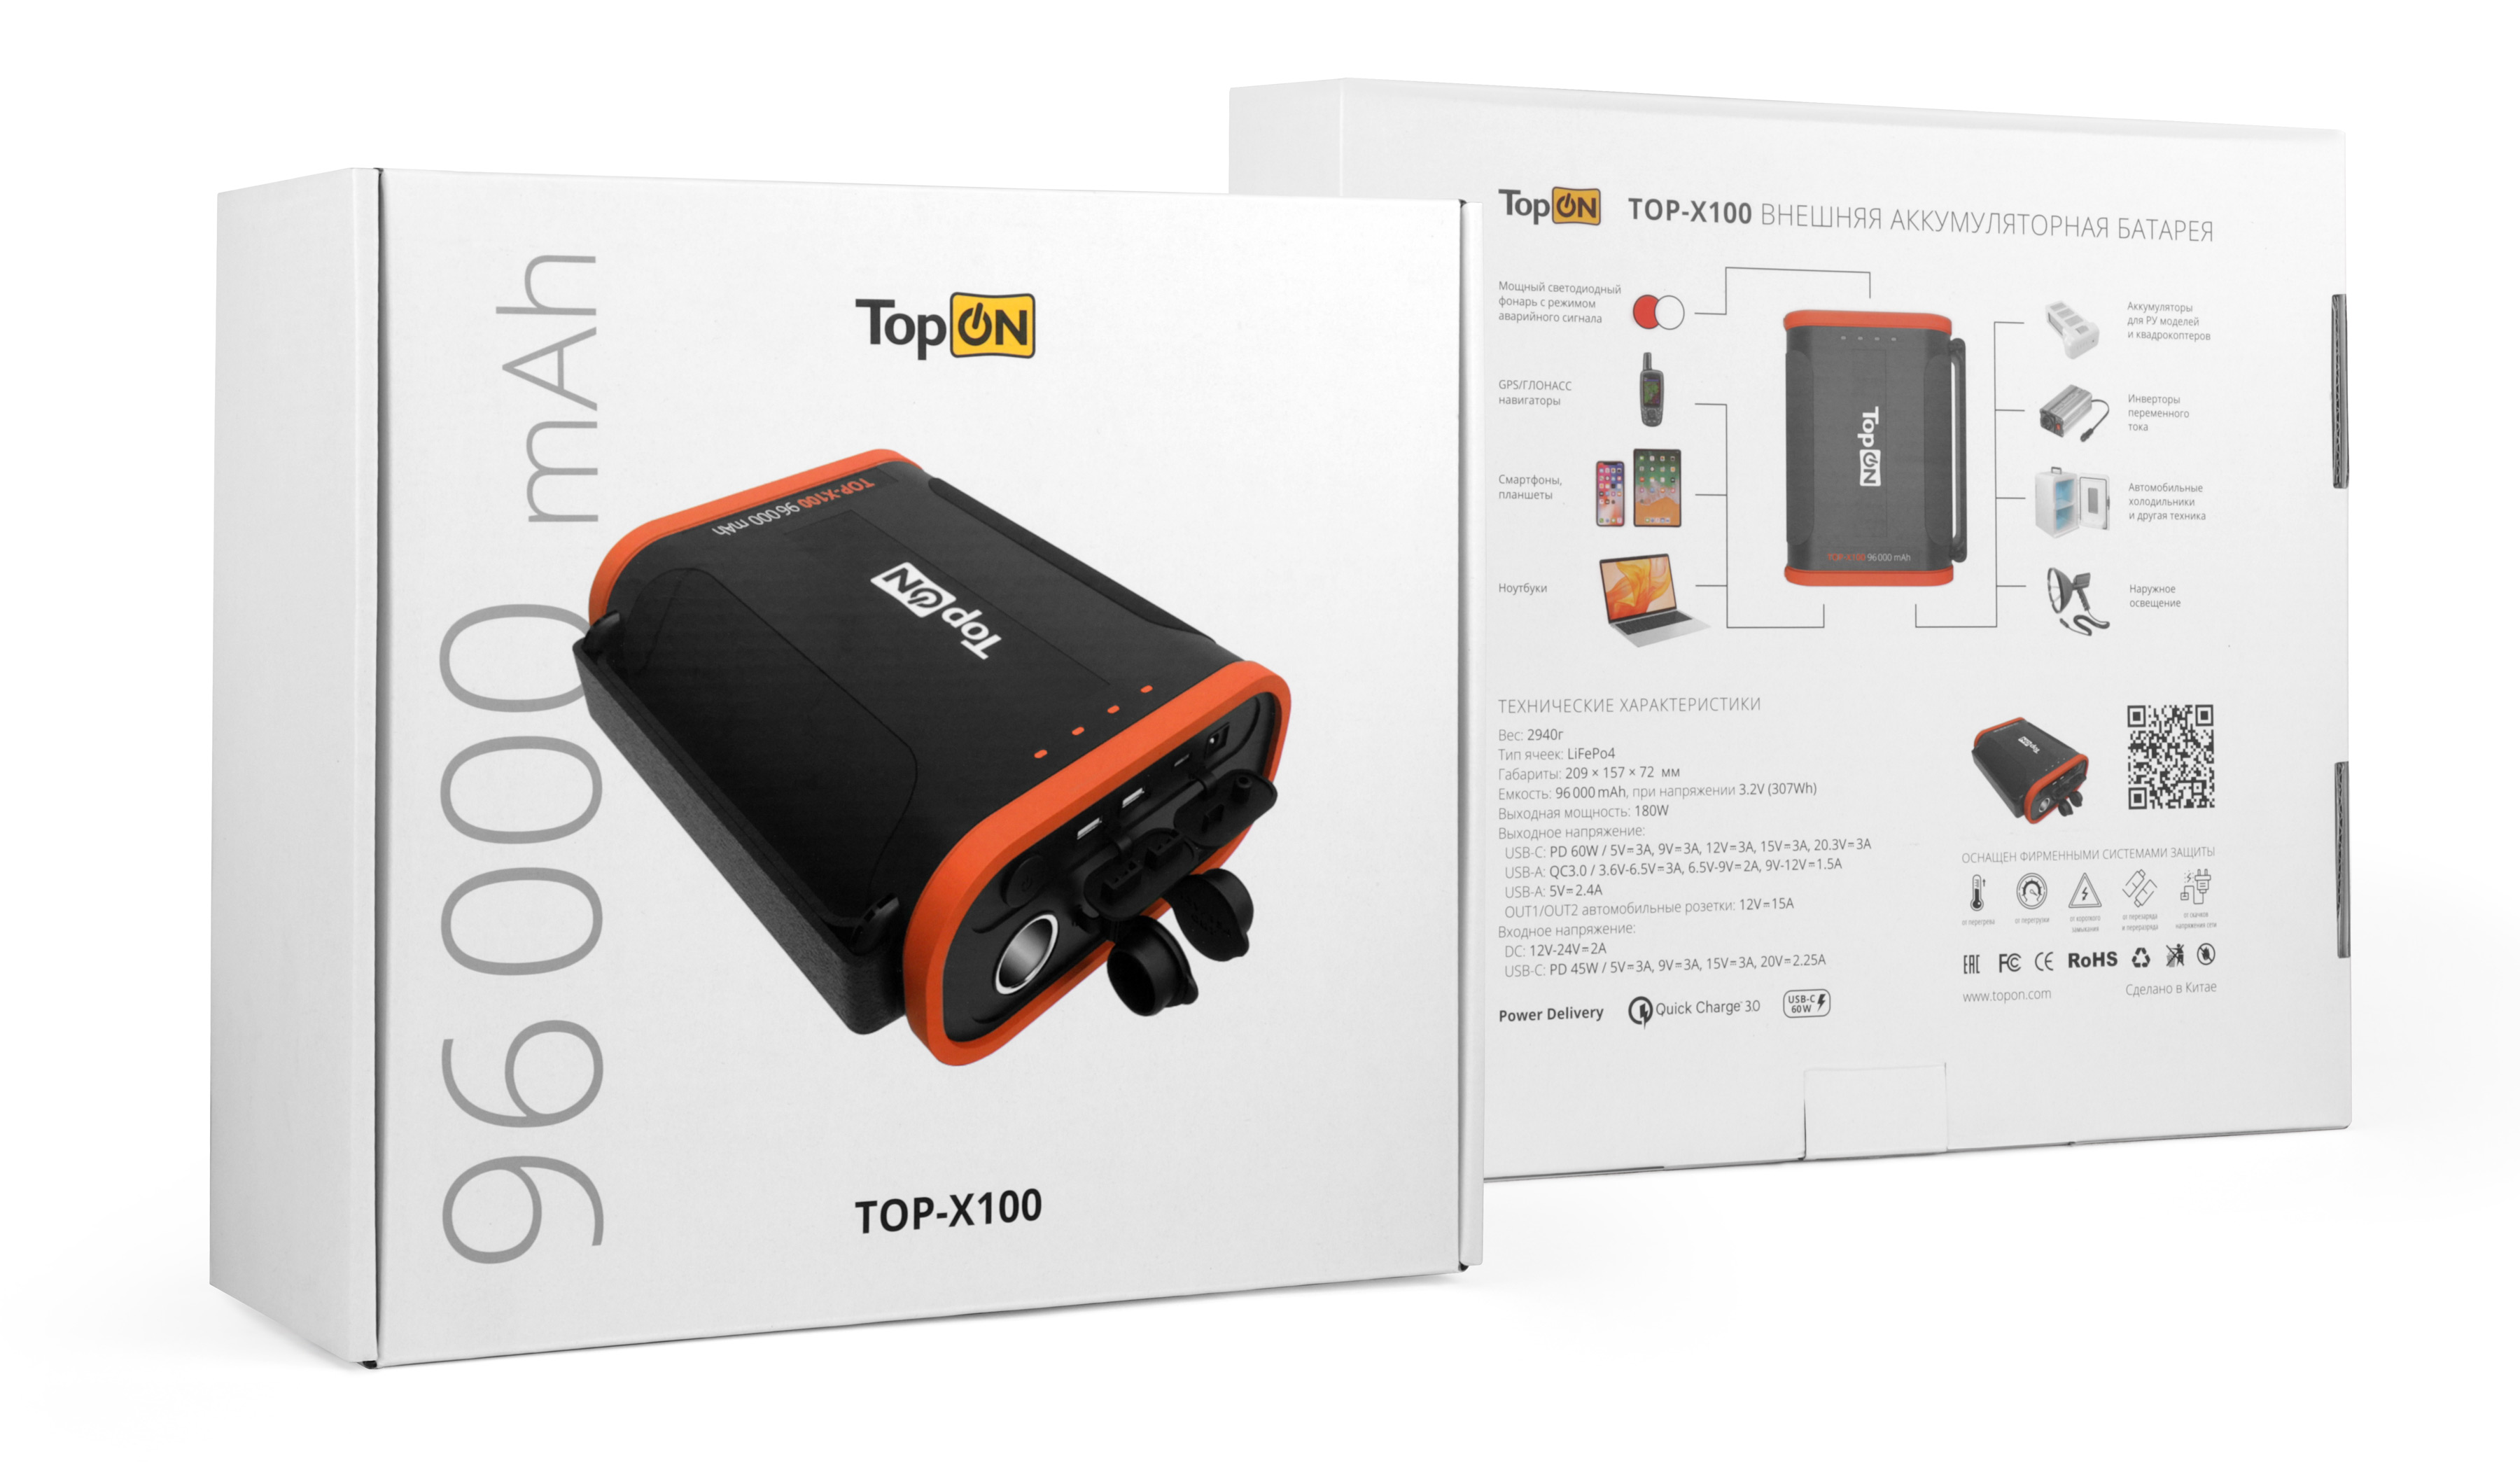 Упаковка TopON TOP-X100